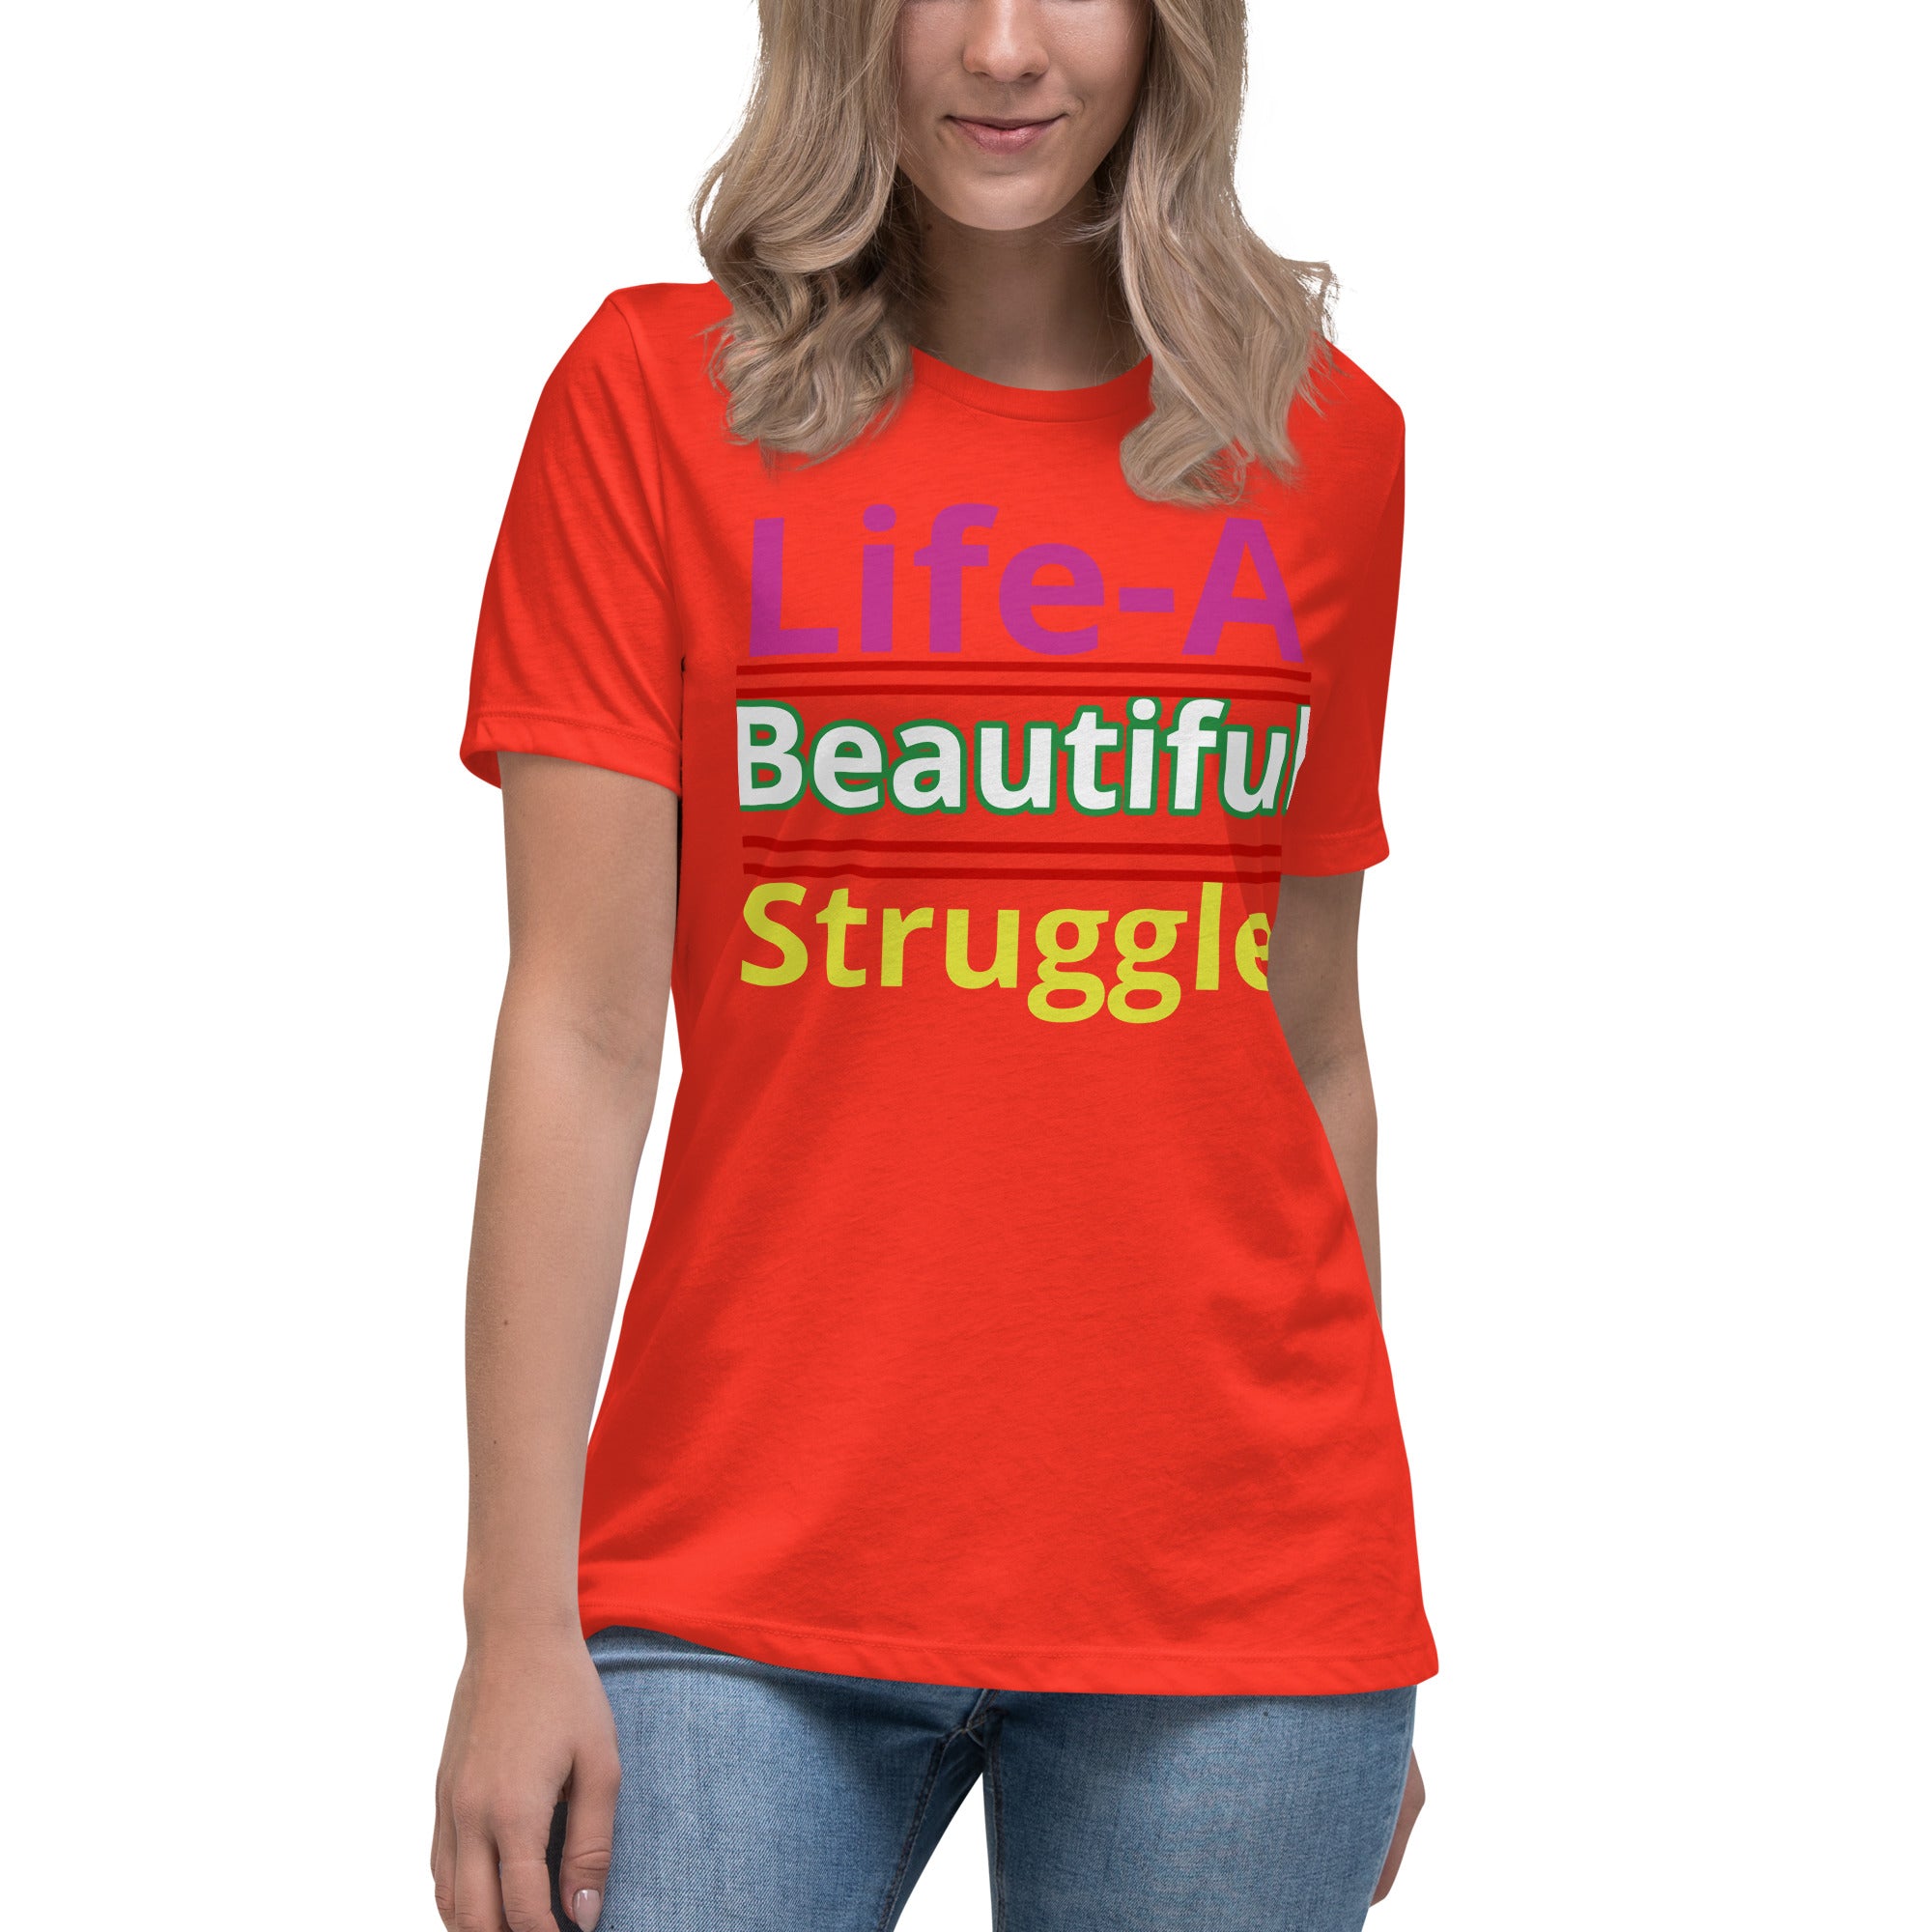 Women's Relaxed T-Shirt Life, Is A Beautiful Struggle T Shirt, Unisex, Fun Shirt